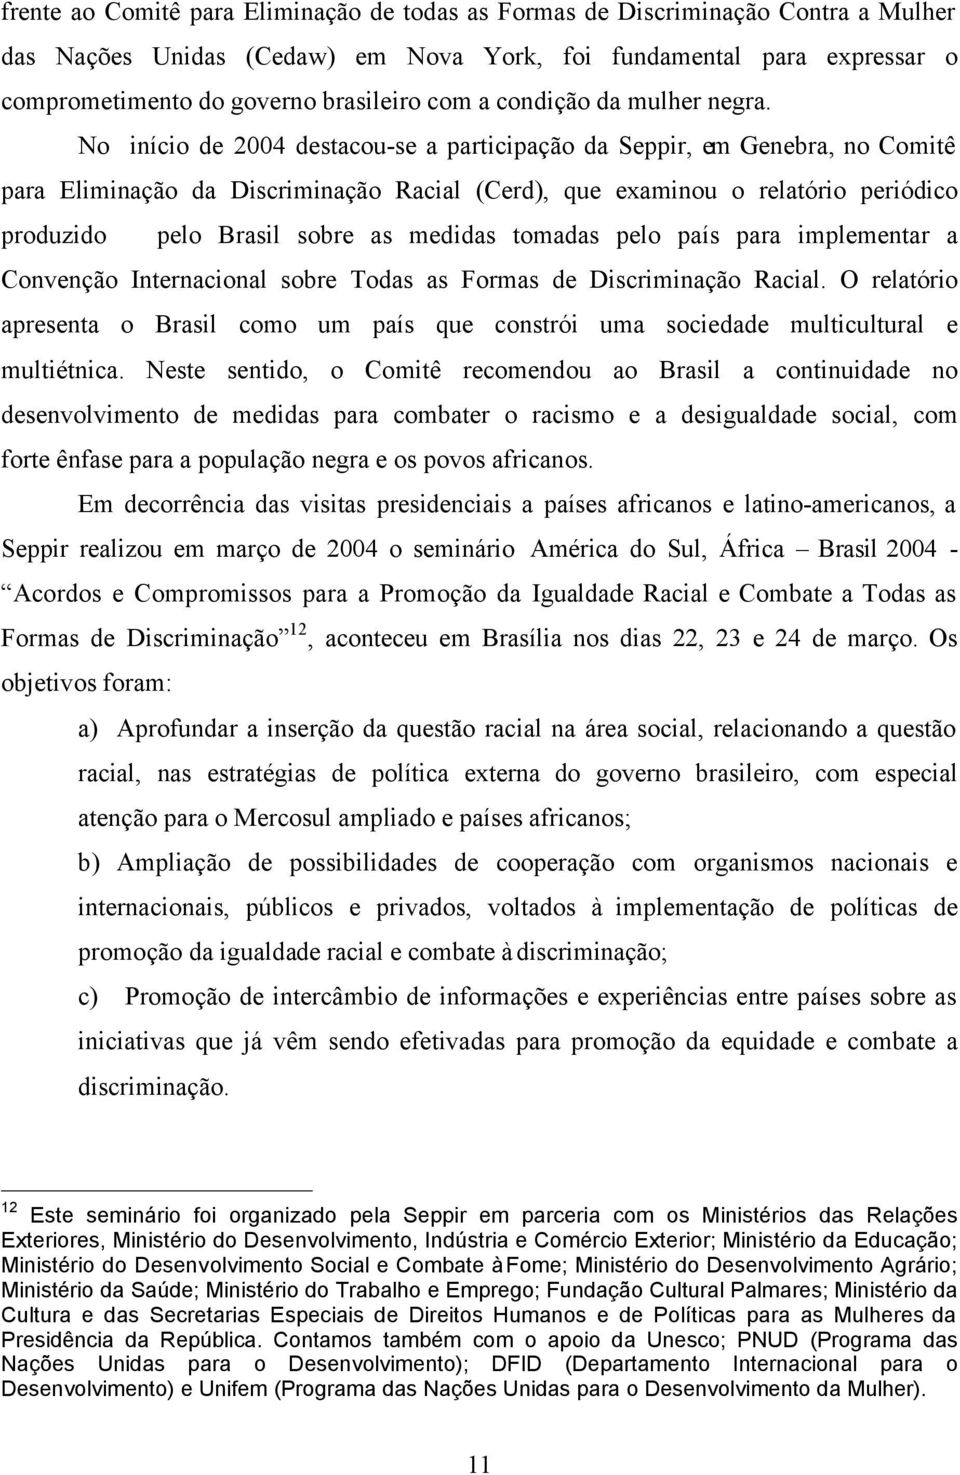 No início de 2004 destacou-se a participação da Seppir, em Genebra, no Comitê para Eliminação da Discriminação Racial (Cerd), que examinou o relatório periódico produzido pelo Brasil sobre as medidas